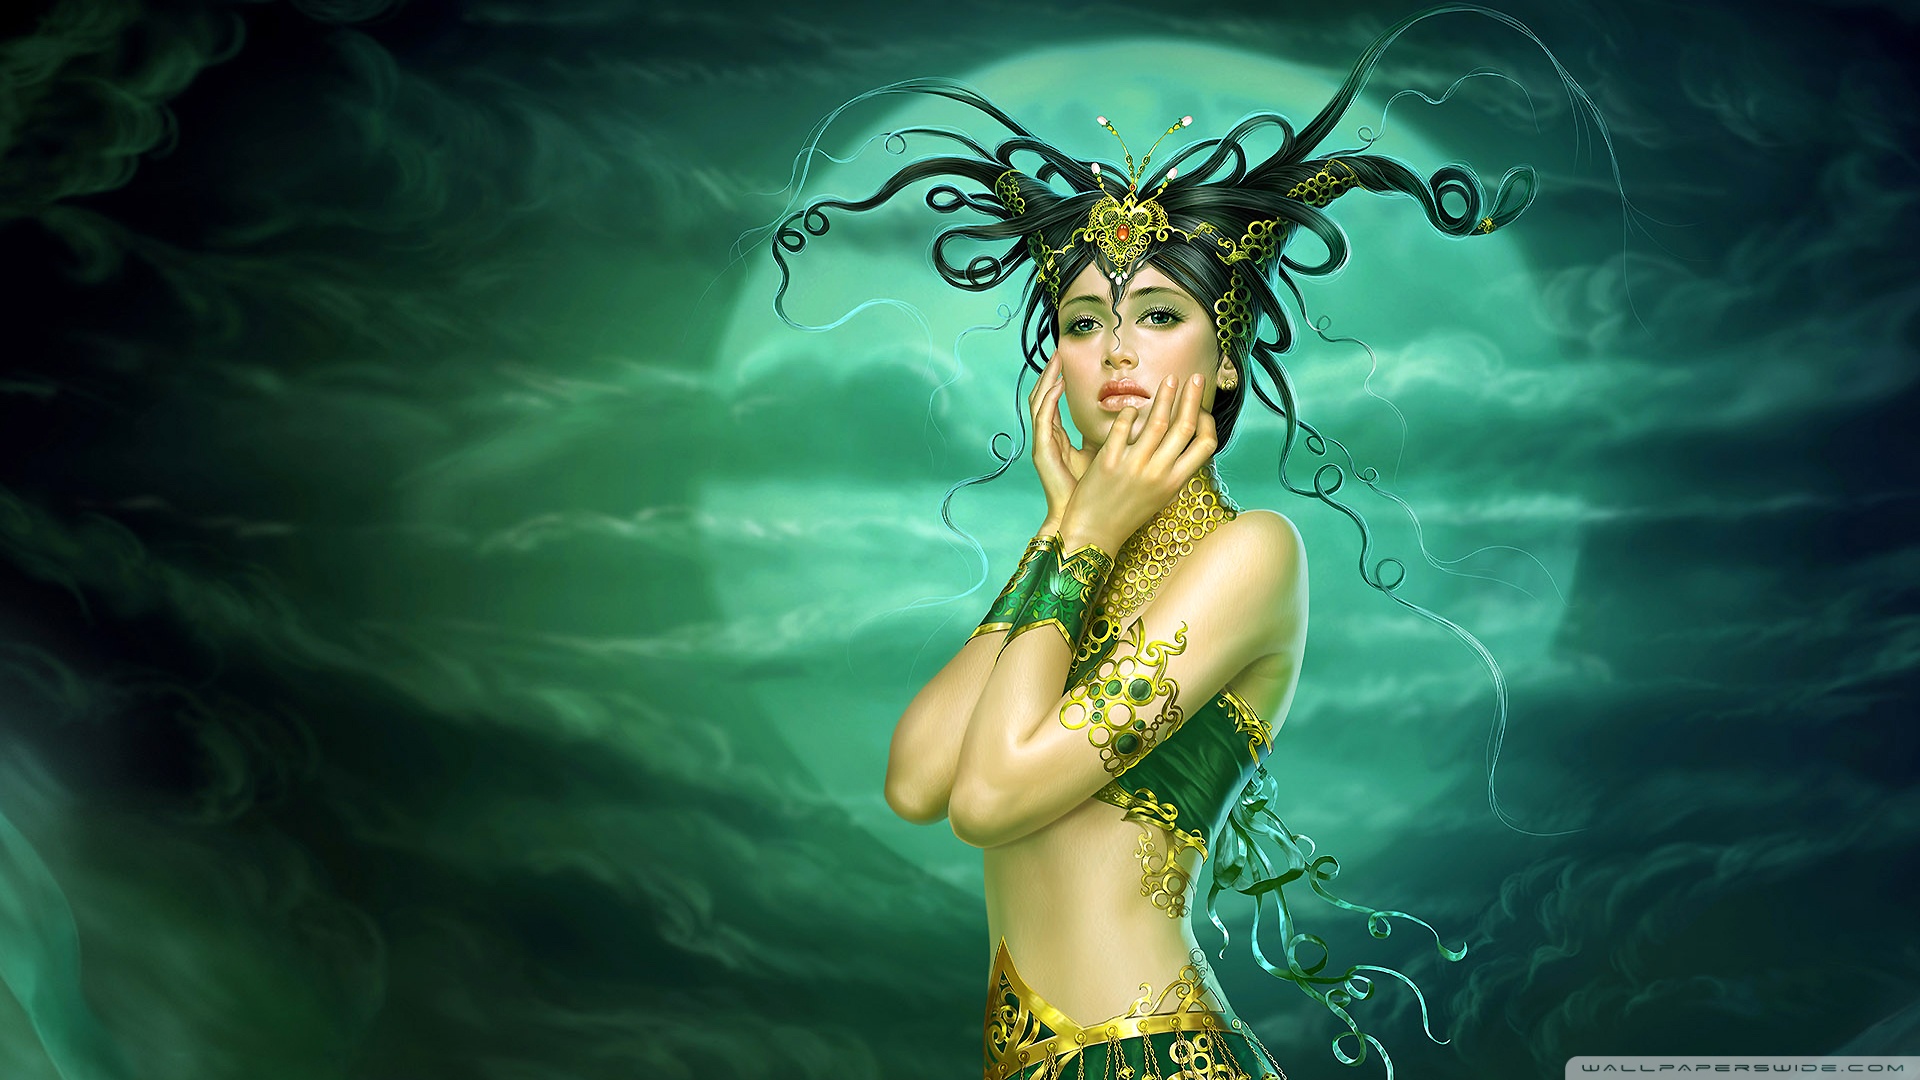 Fantasy Art Women - HD Wallpaper 